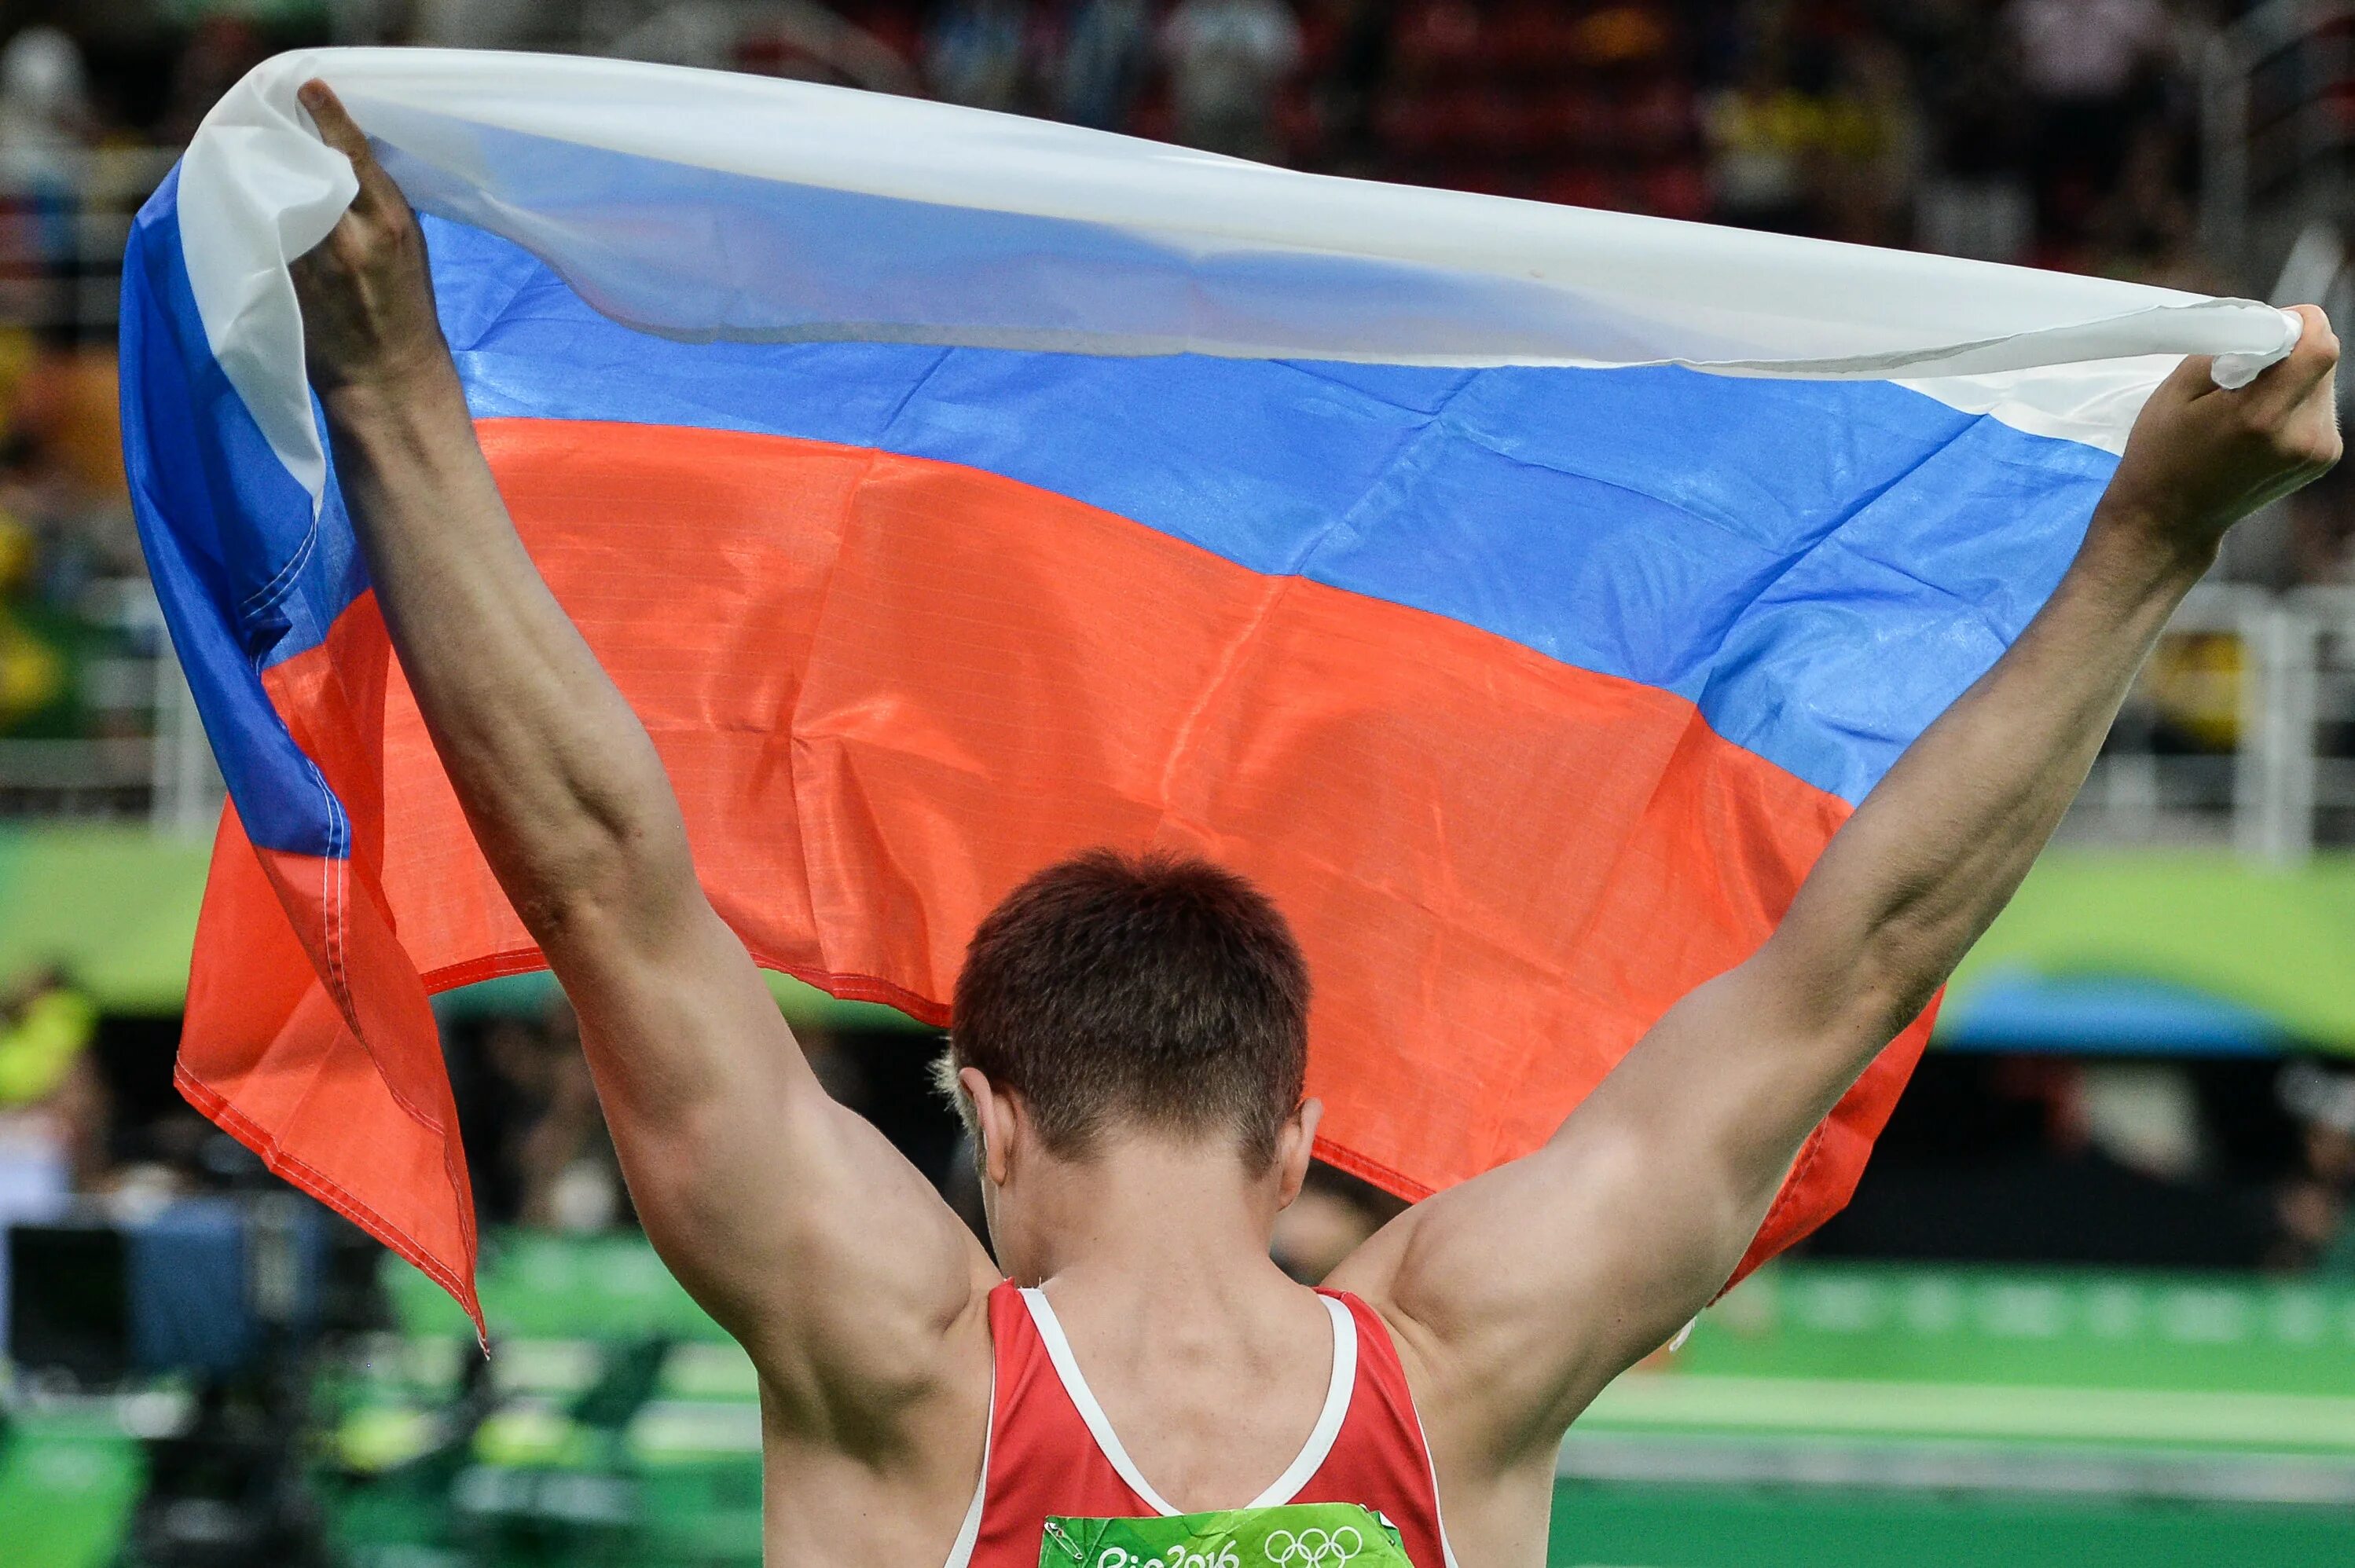 Впереди нас ехали спортсмены. Атлеты России. Спортсмены с флагом России. Допинговый скандал в российском спорте.